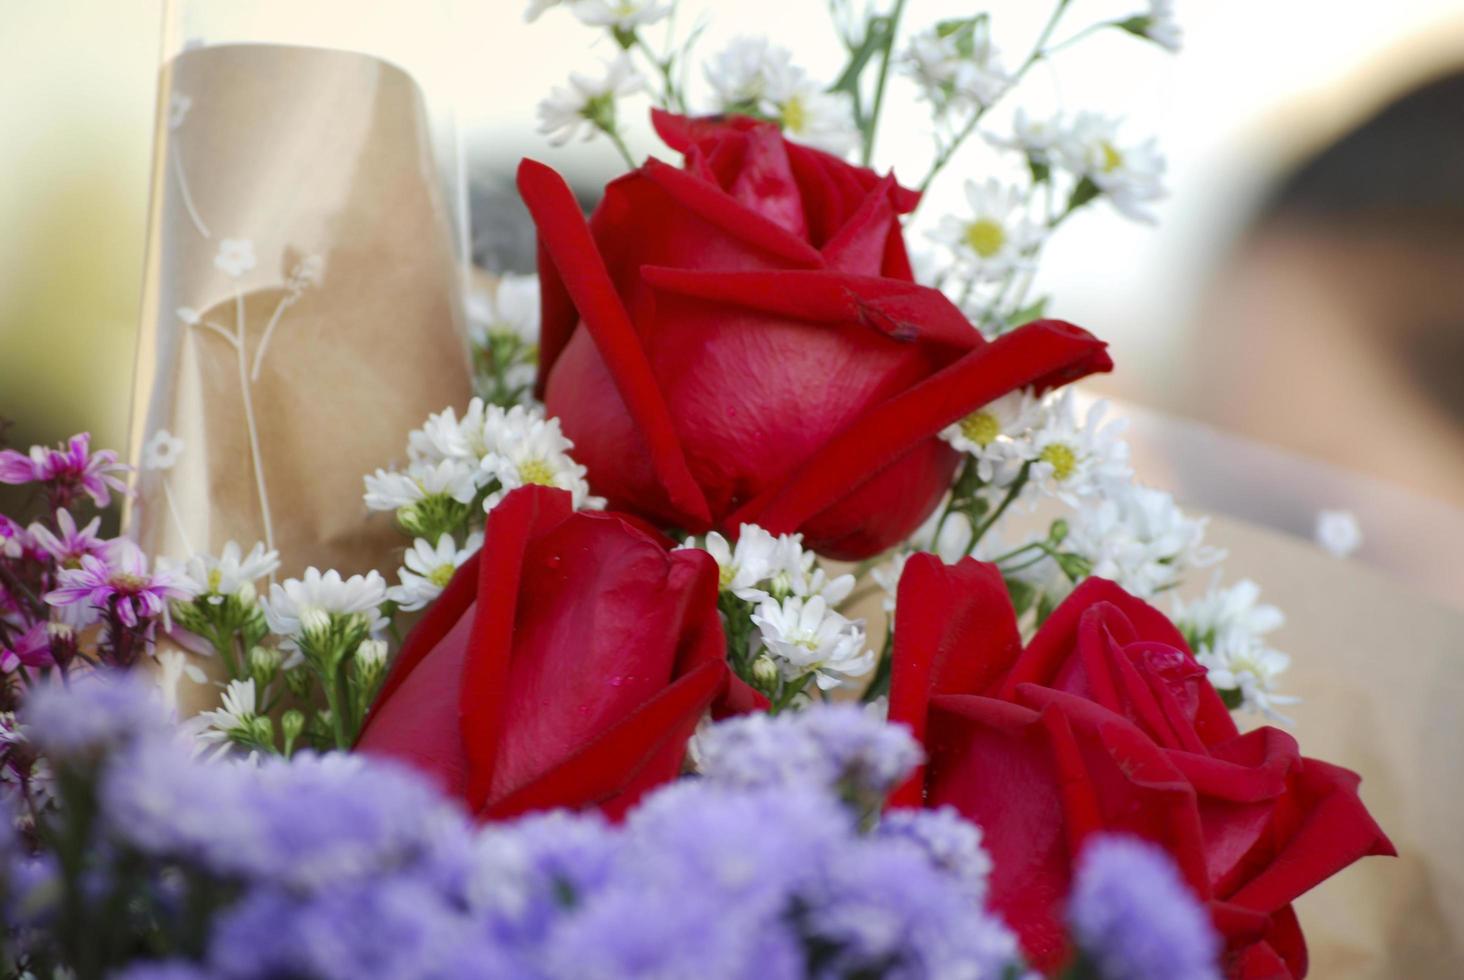 bouquet de roses rouges le jour de la remise des diplômes photo